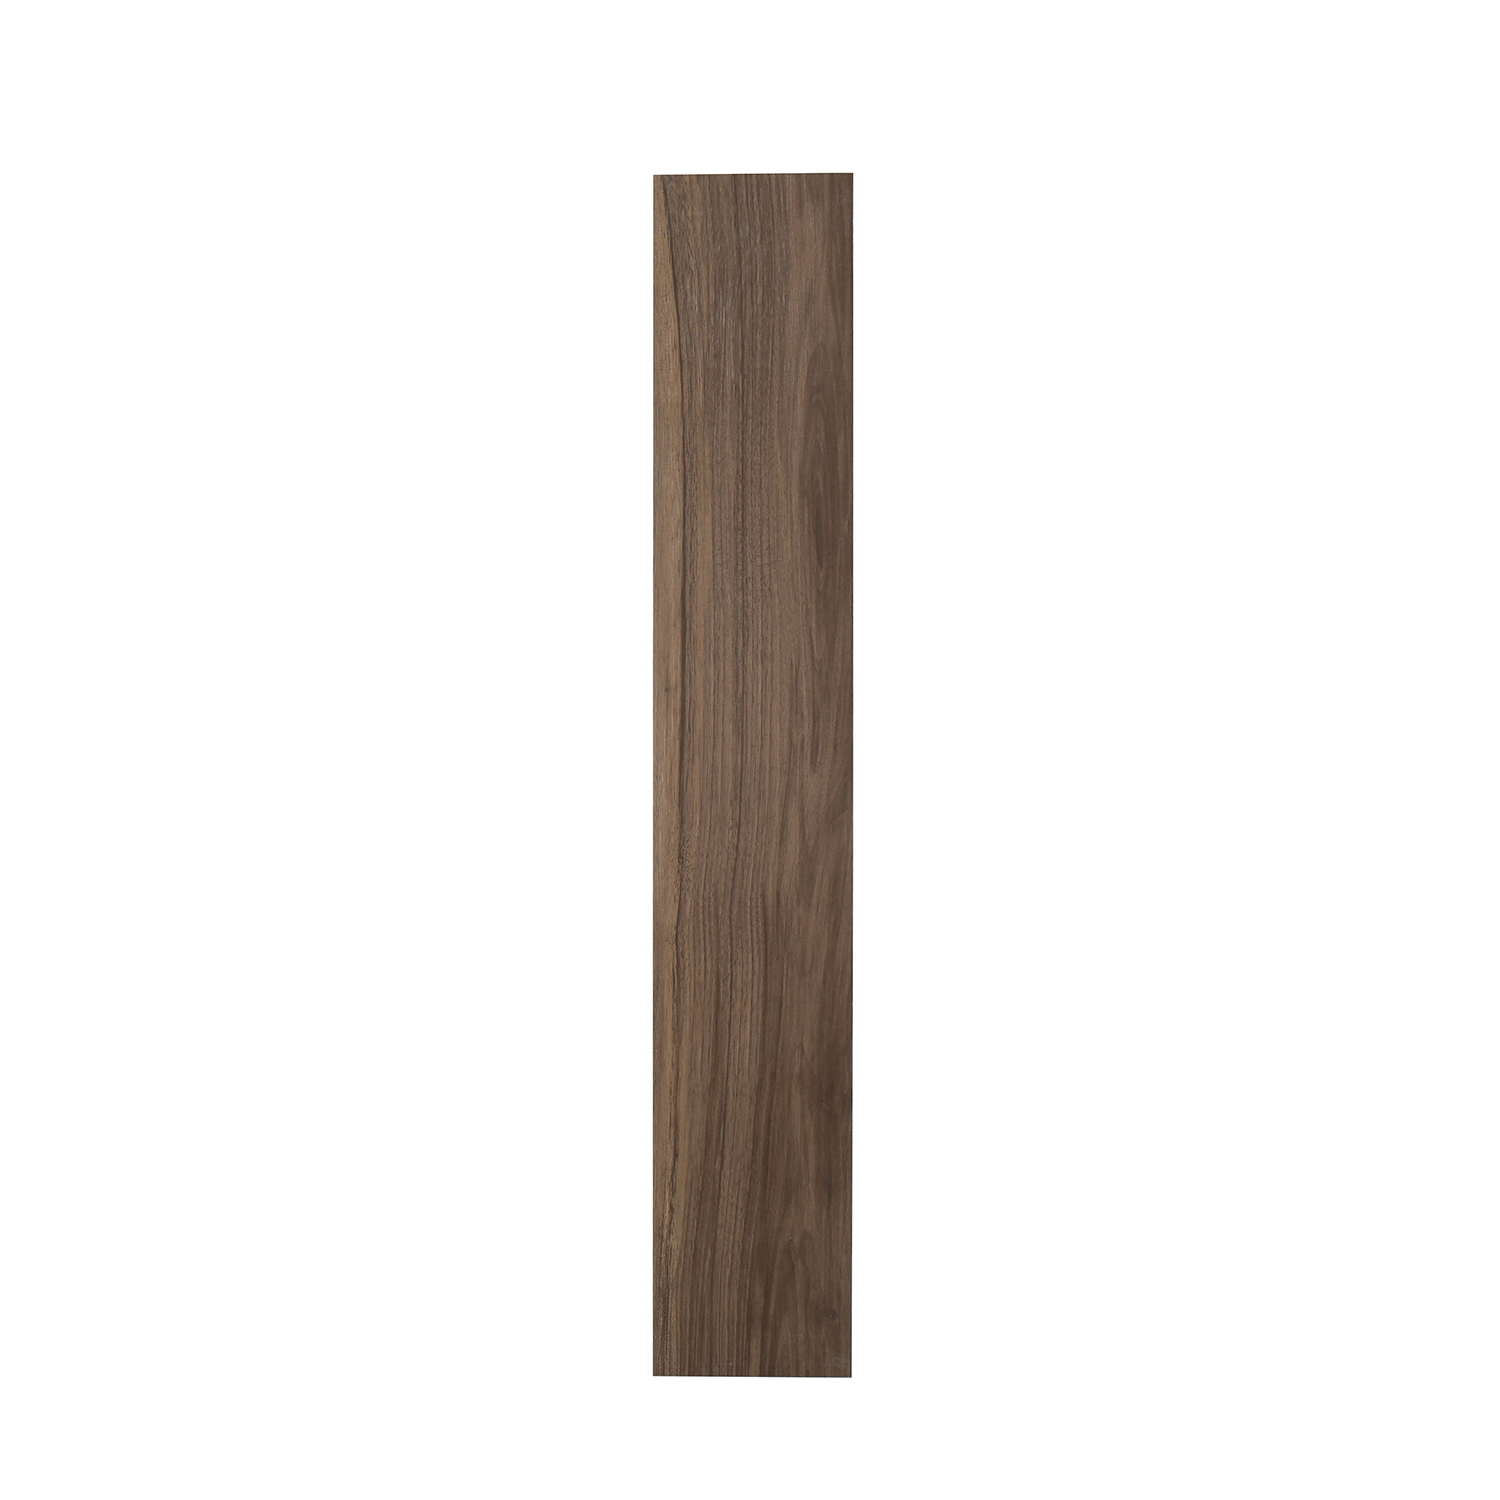 3D Inkjet Like Natural wood looks wooden floor tiles-AJ915058M-150x900